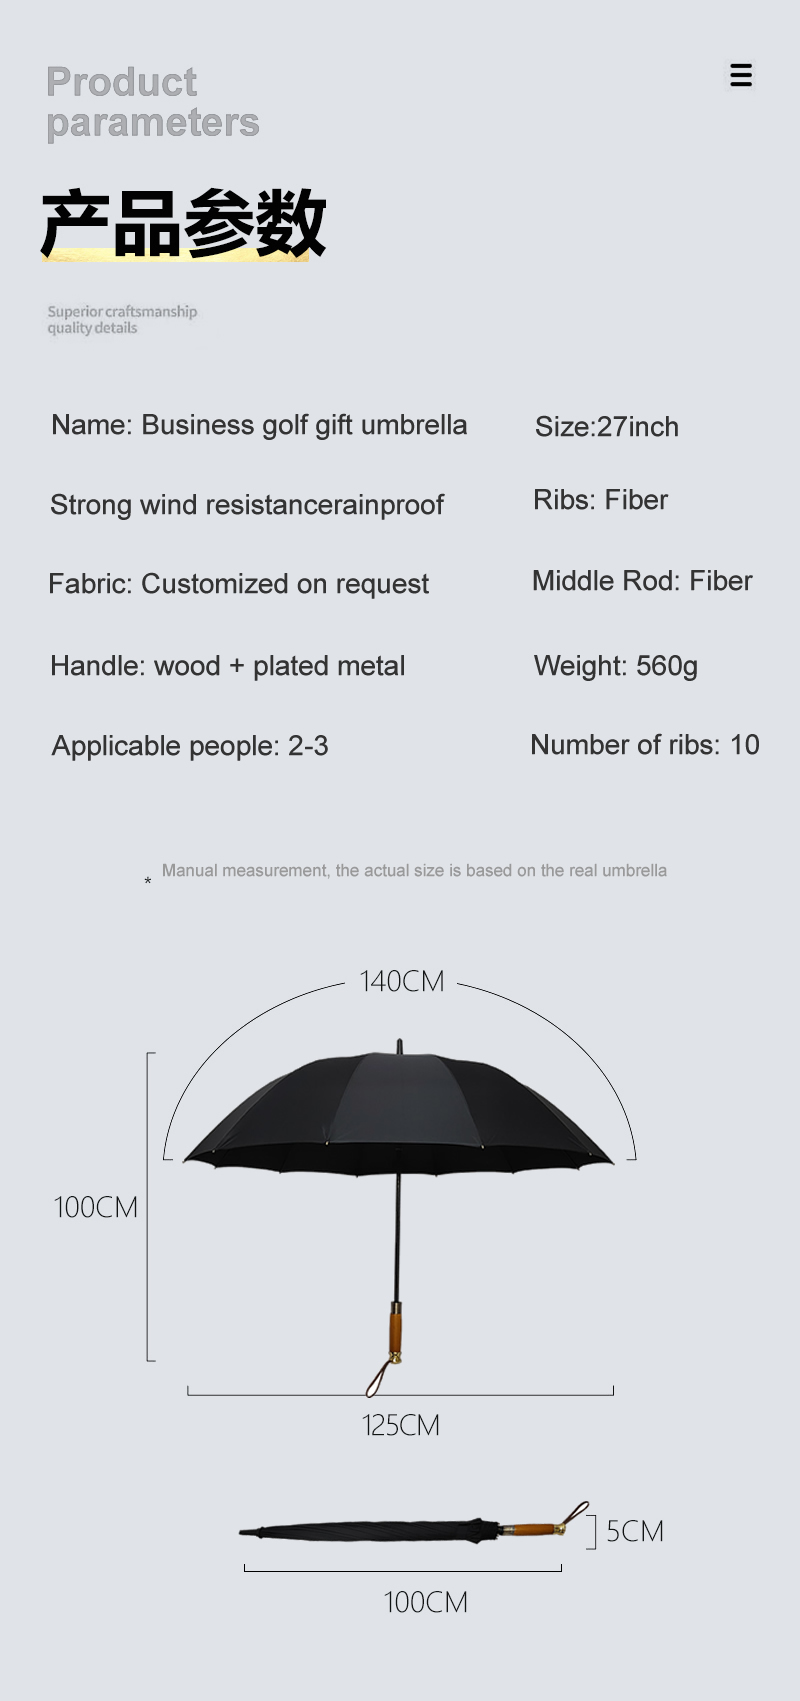 Umbrella parameters